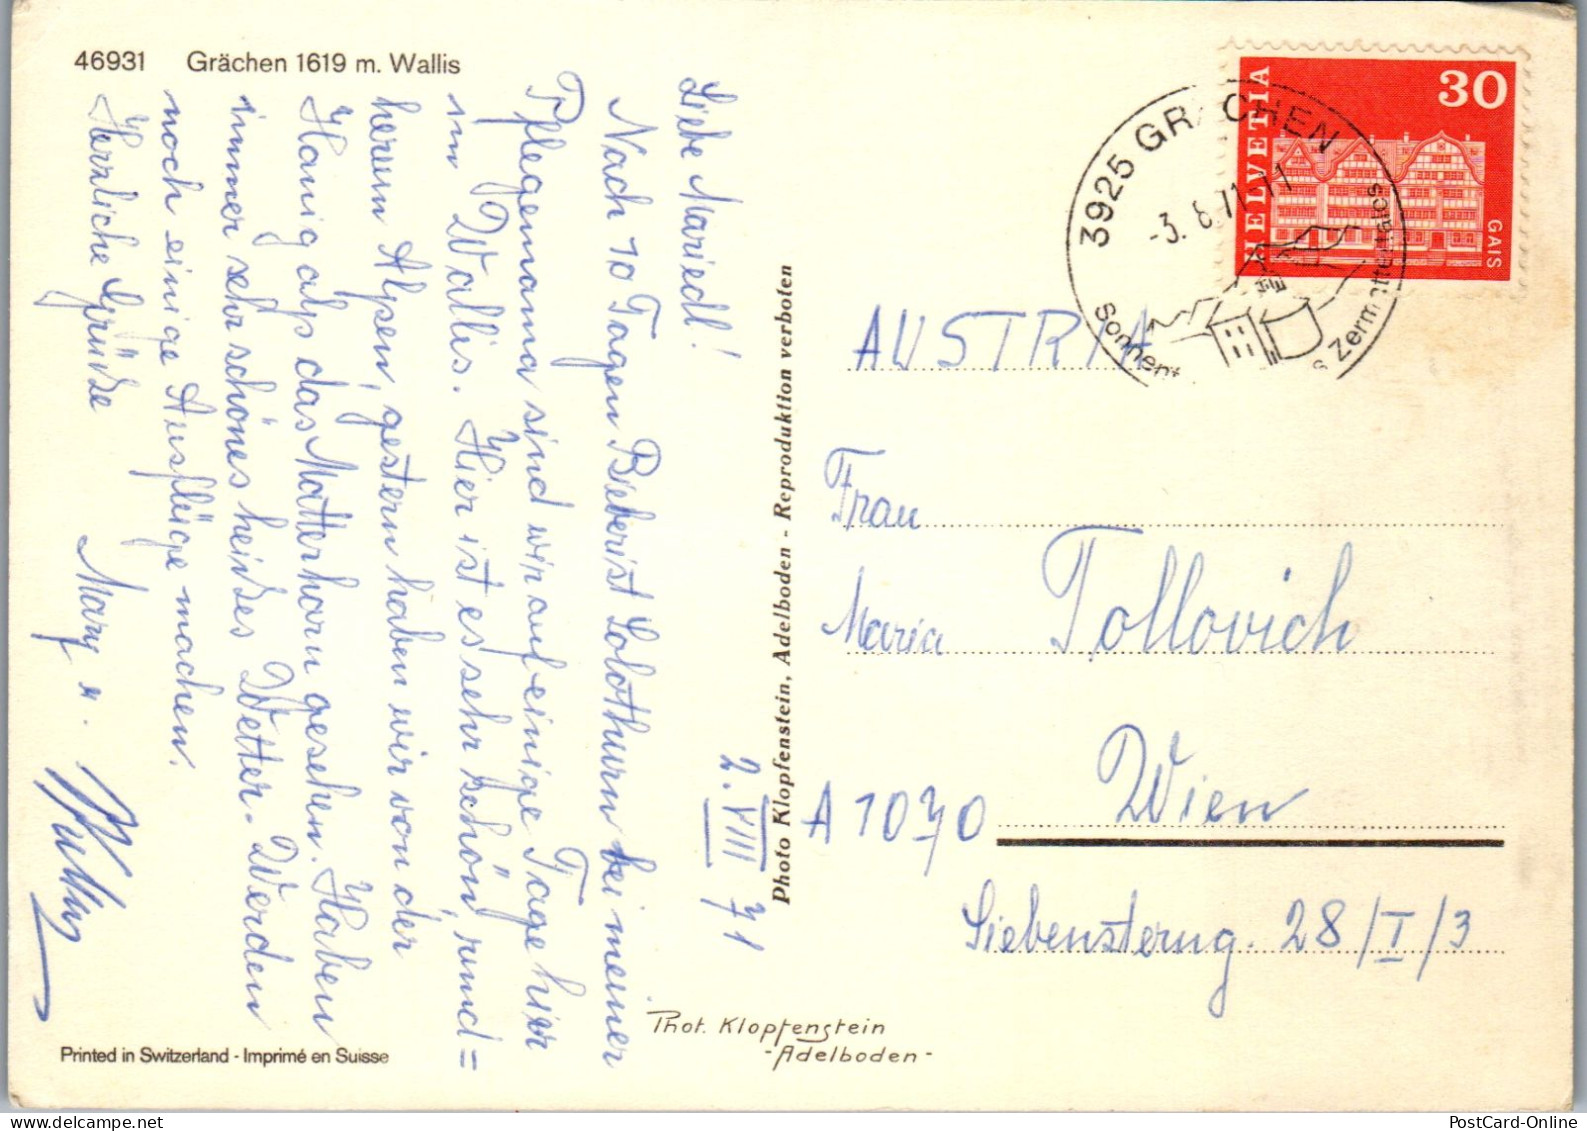 50550 - Schweiz - Grächen , Wallis , Mehrbildkarte - Gelaufen 1971 - Grächen